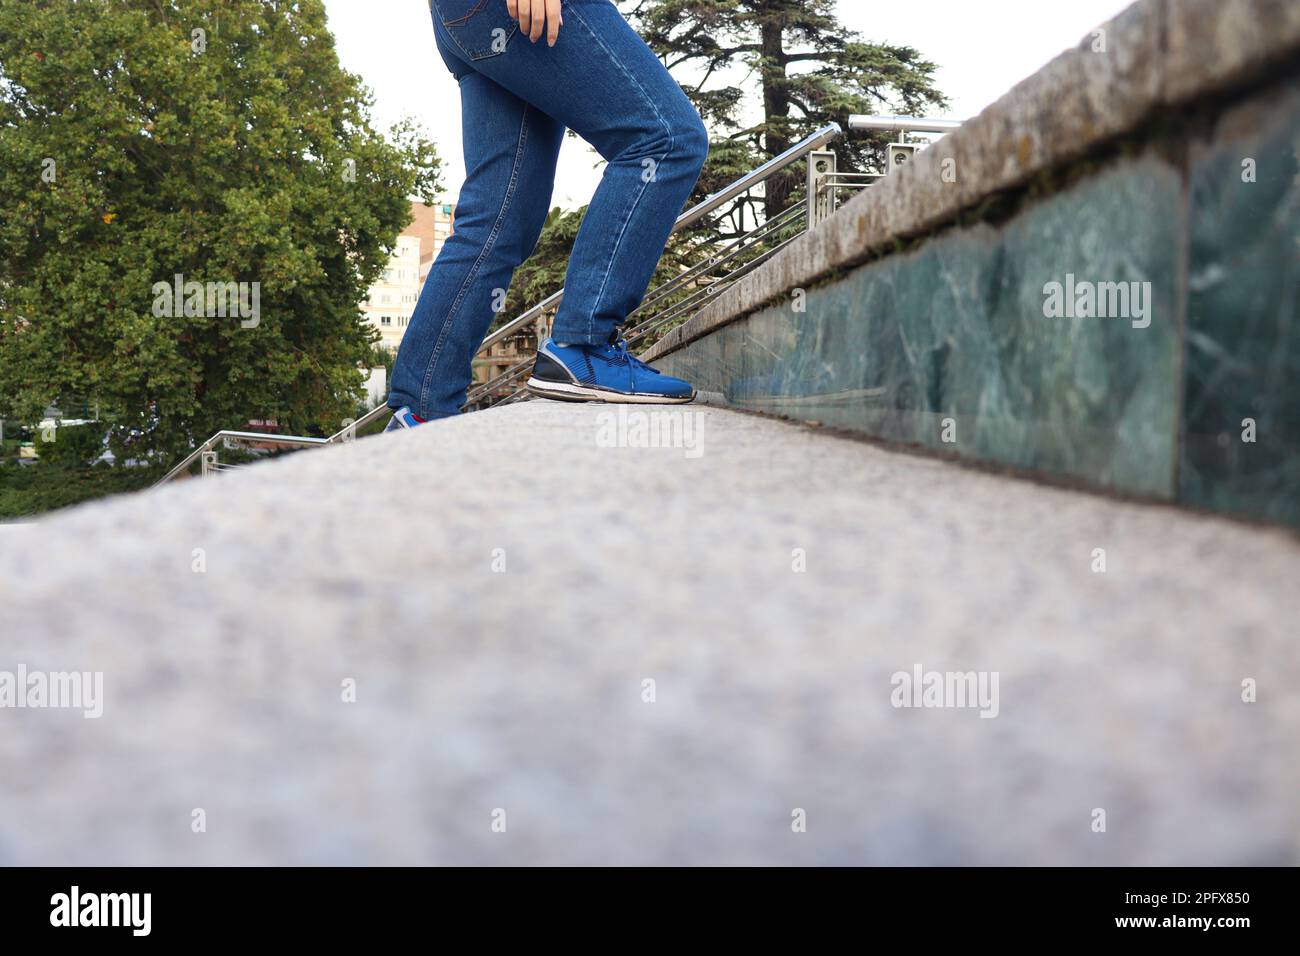 Eine Person mit blauen Jeans und Schuhen, die die Treppe hinaufgeht Stockfoto